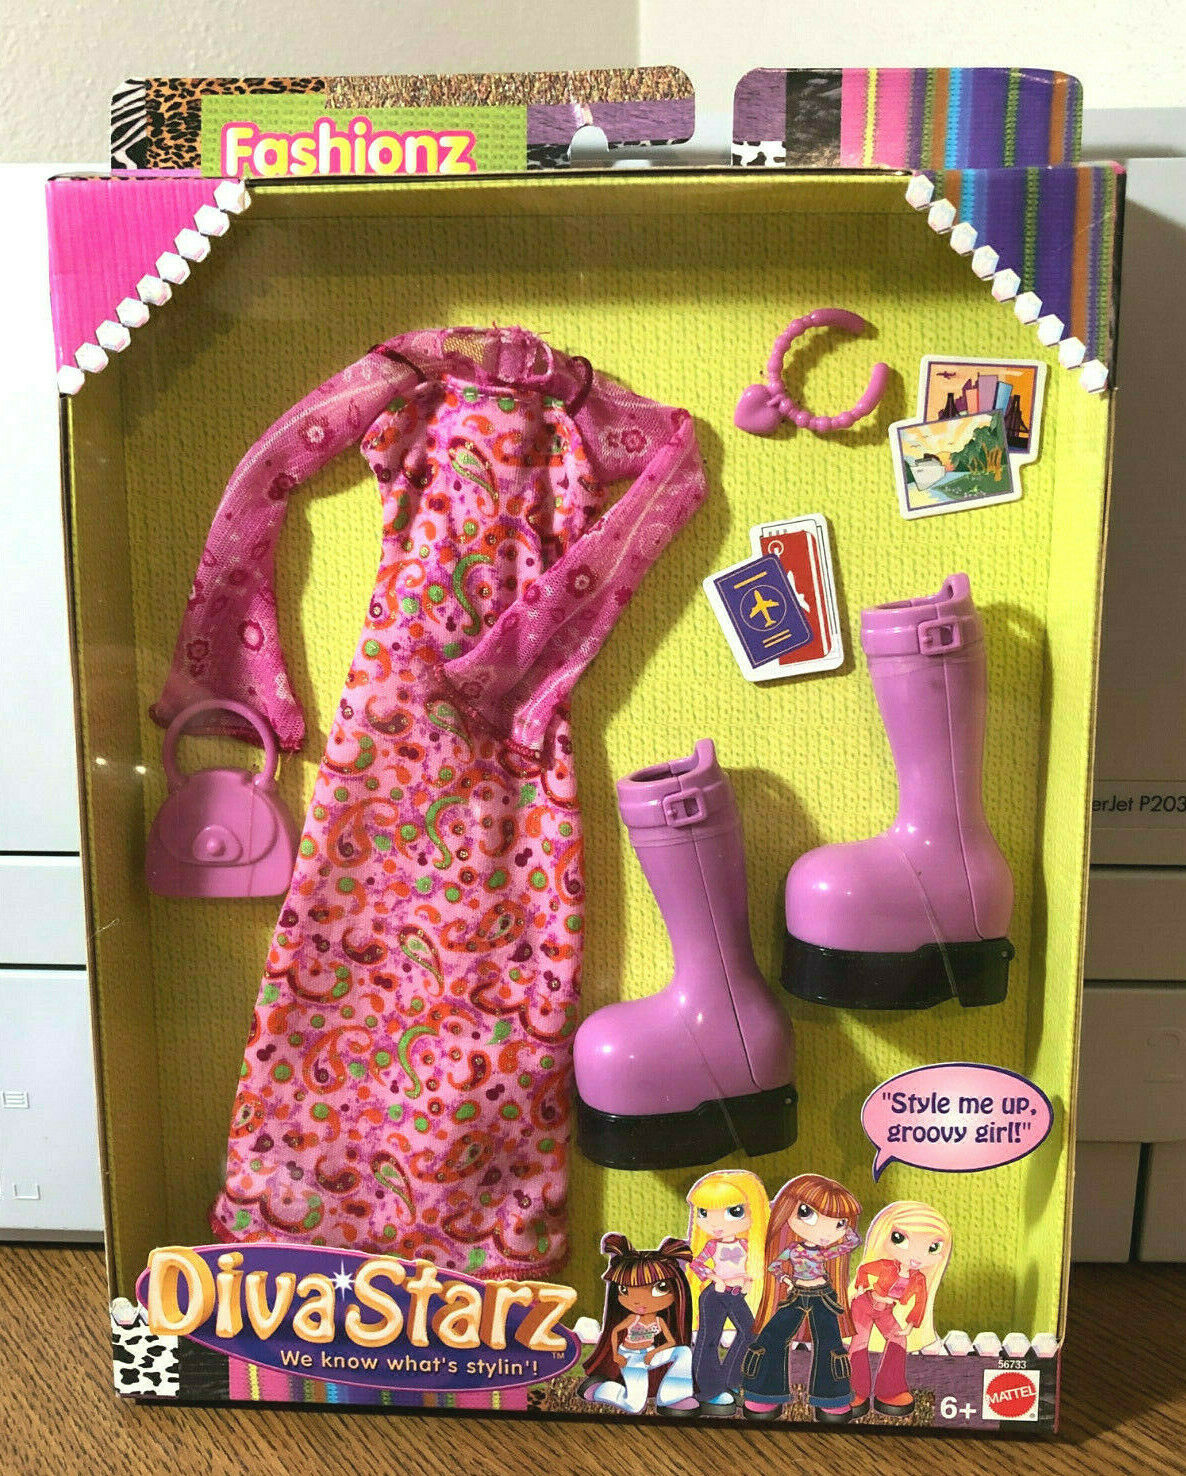 2002 Mattel Diva Starz Fashionz Mib/nrfb